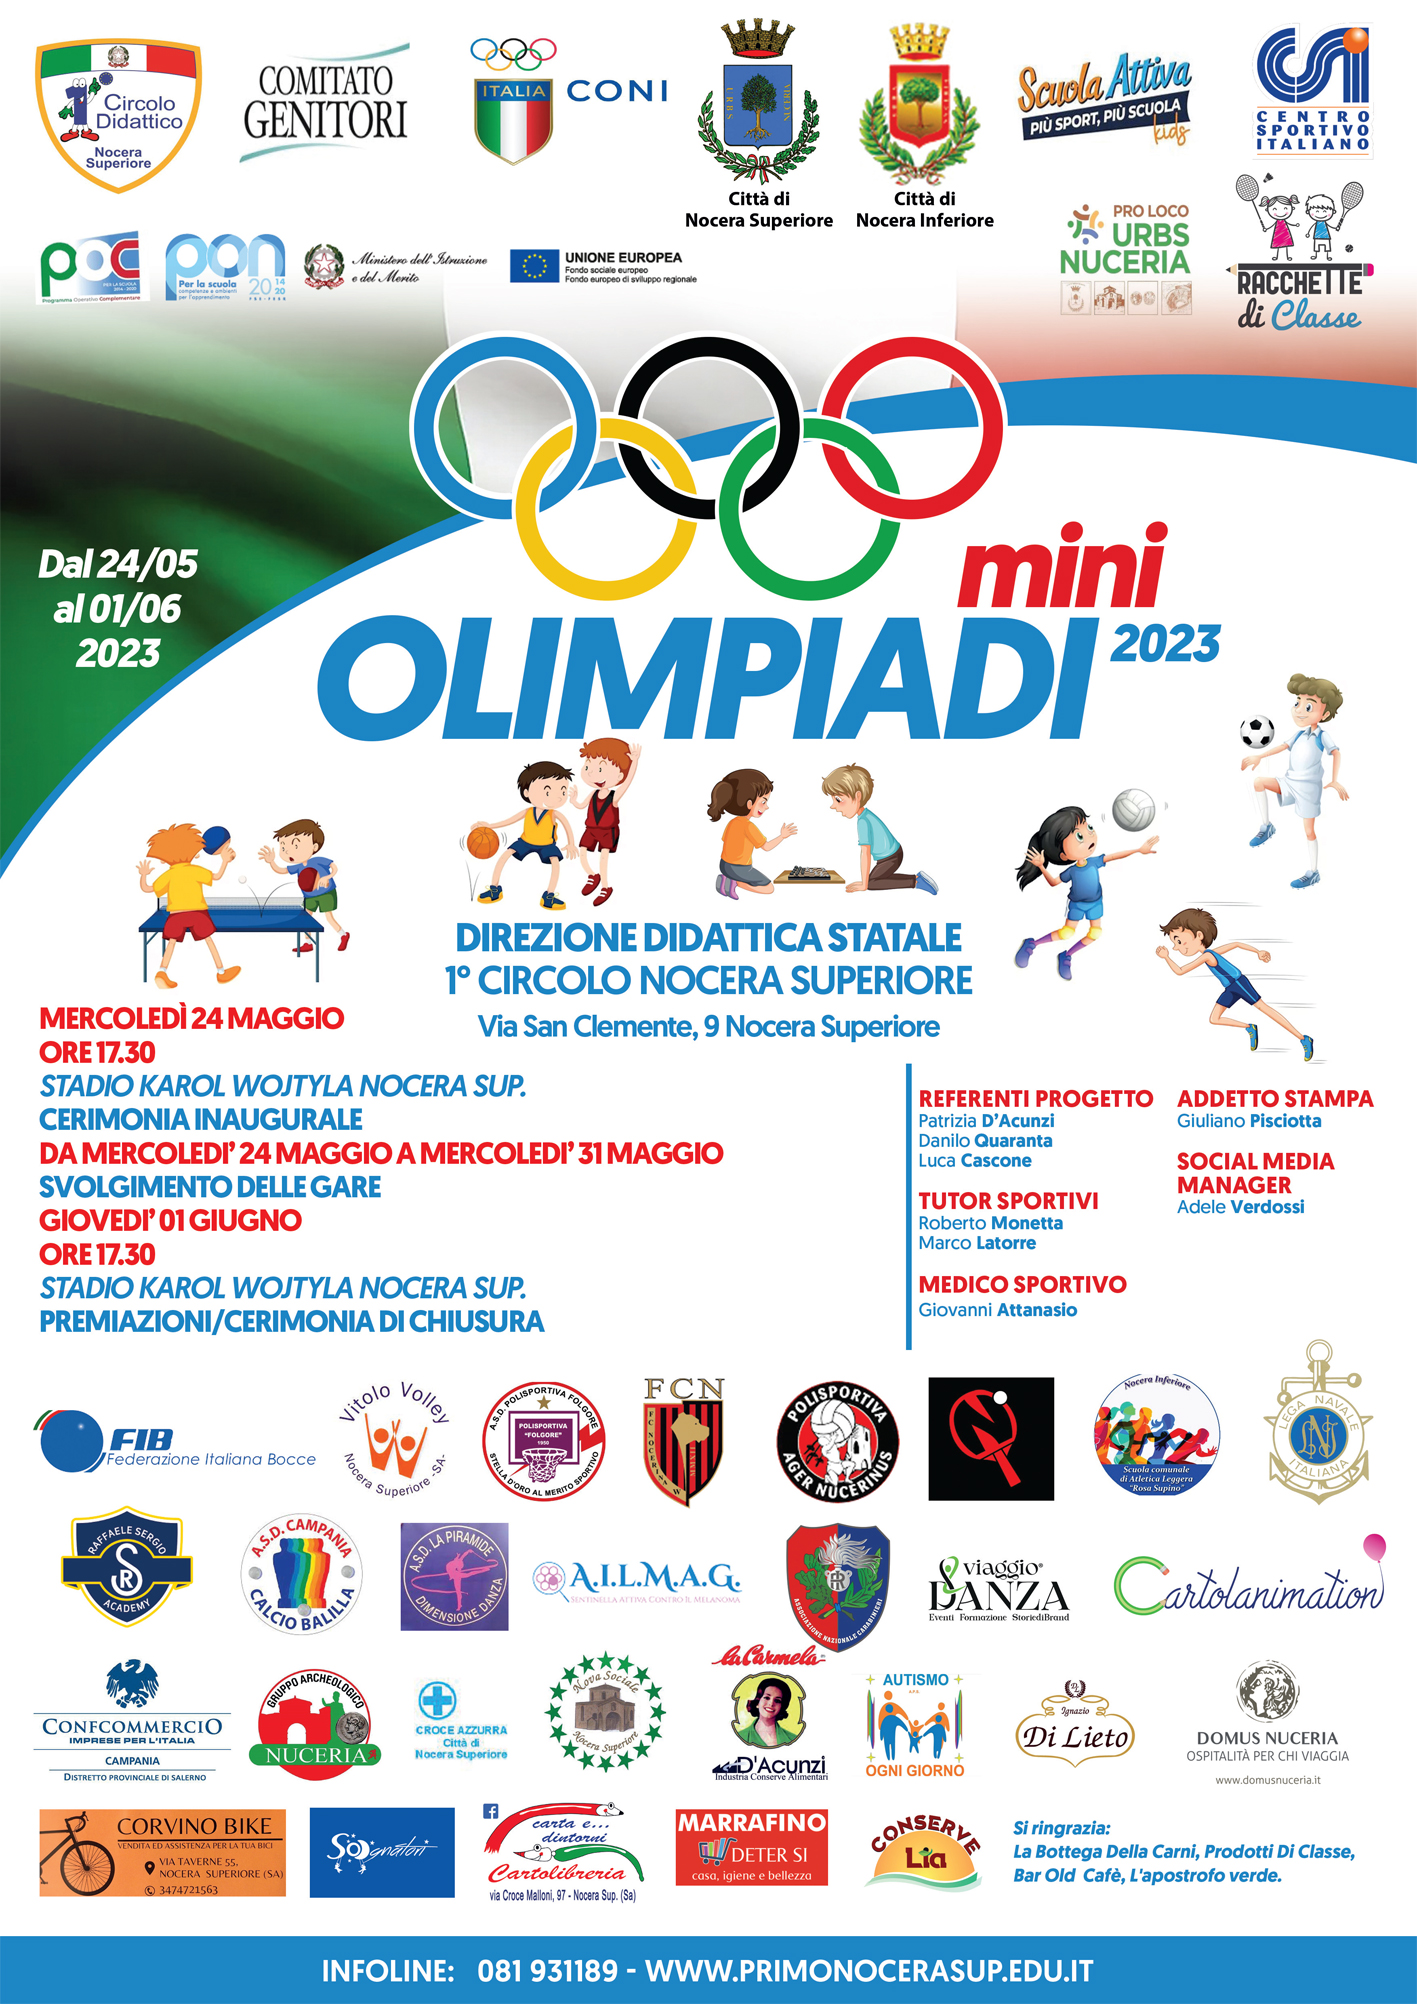 Nocera Superiore: I Circolo Didattico, Mini Olimpiadi 2023, conferenza stampa